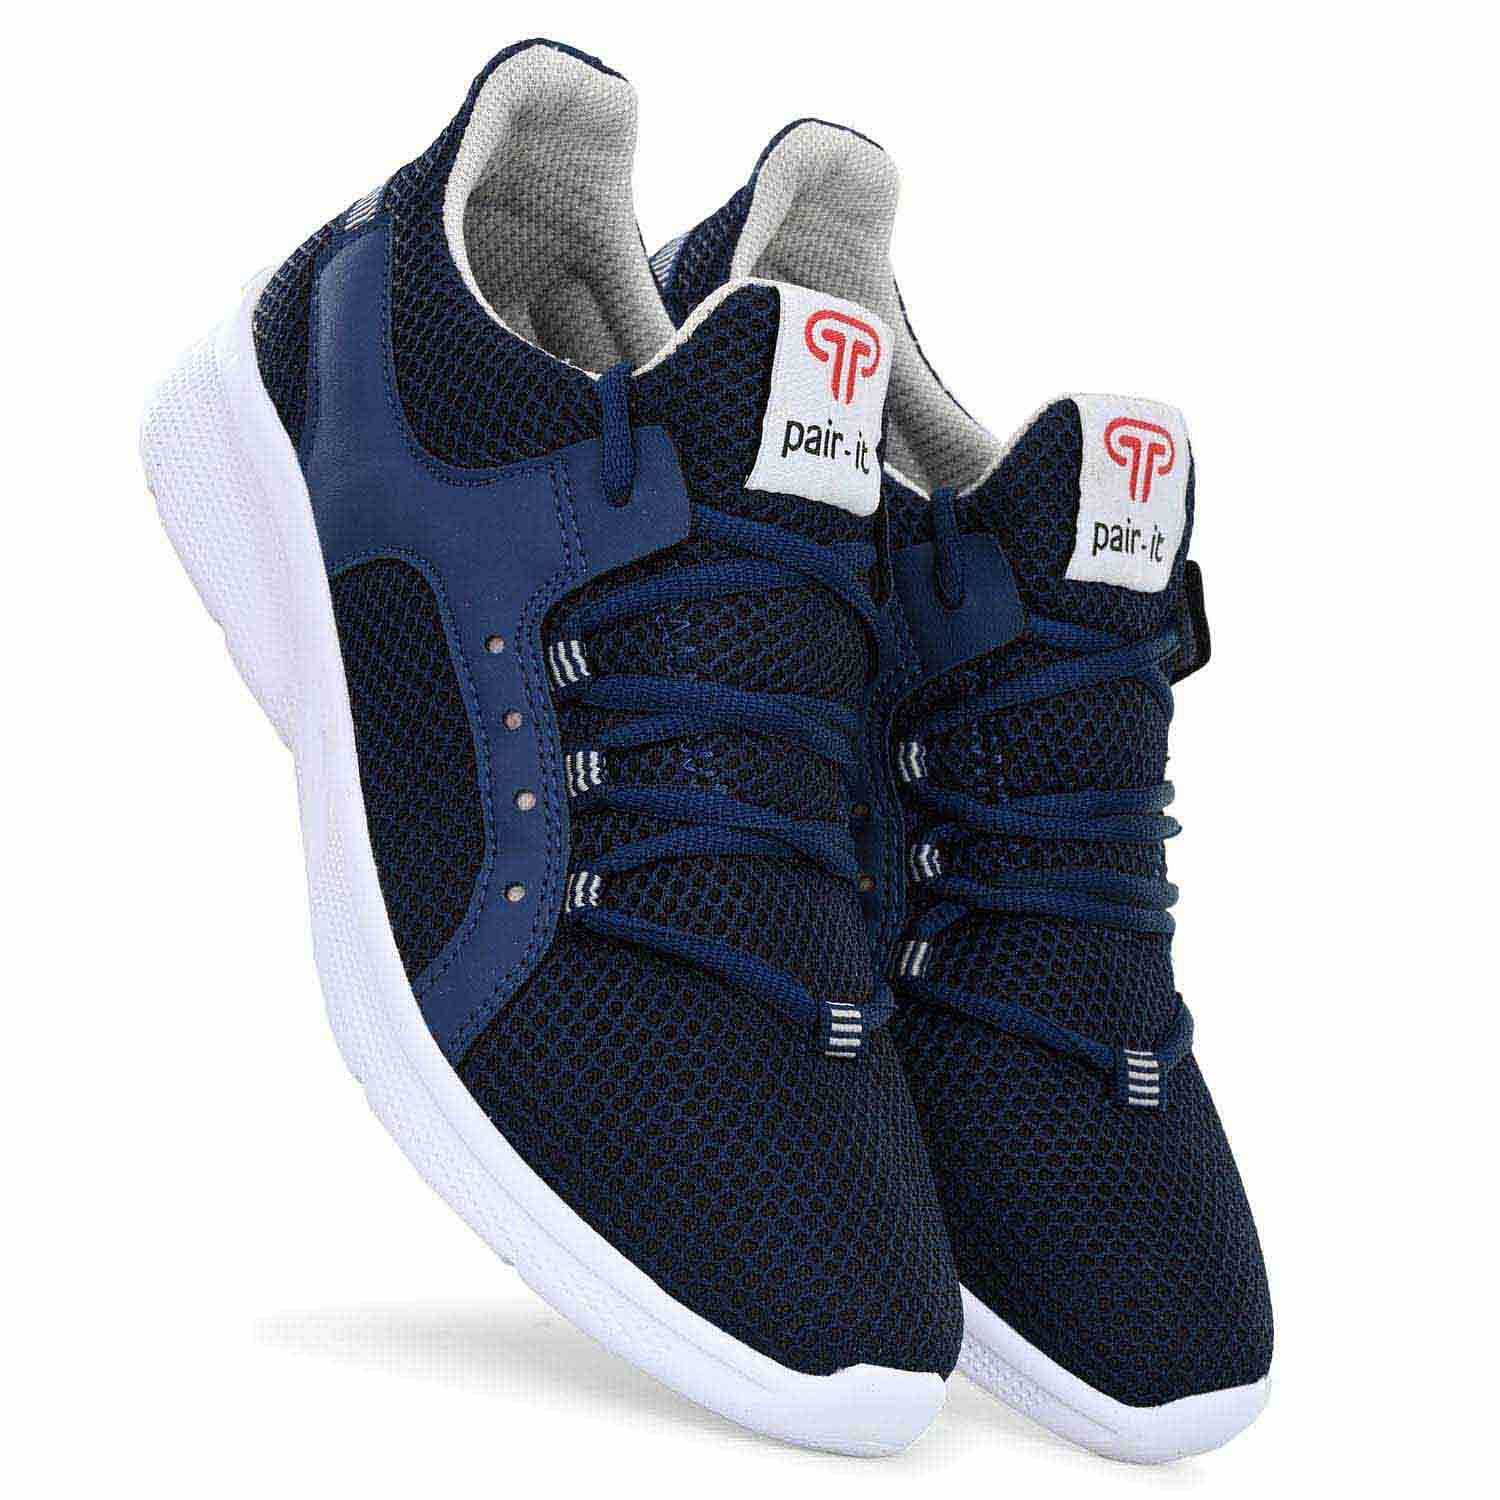 Pair-it Men's Sports Shoes-LZ-Presto-115-Blue